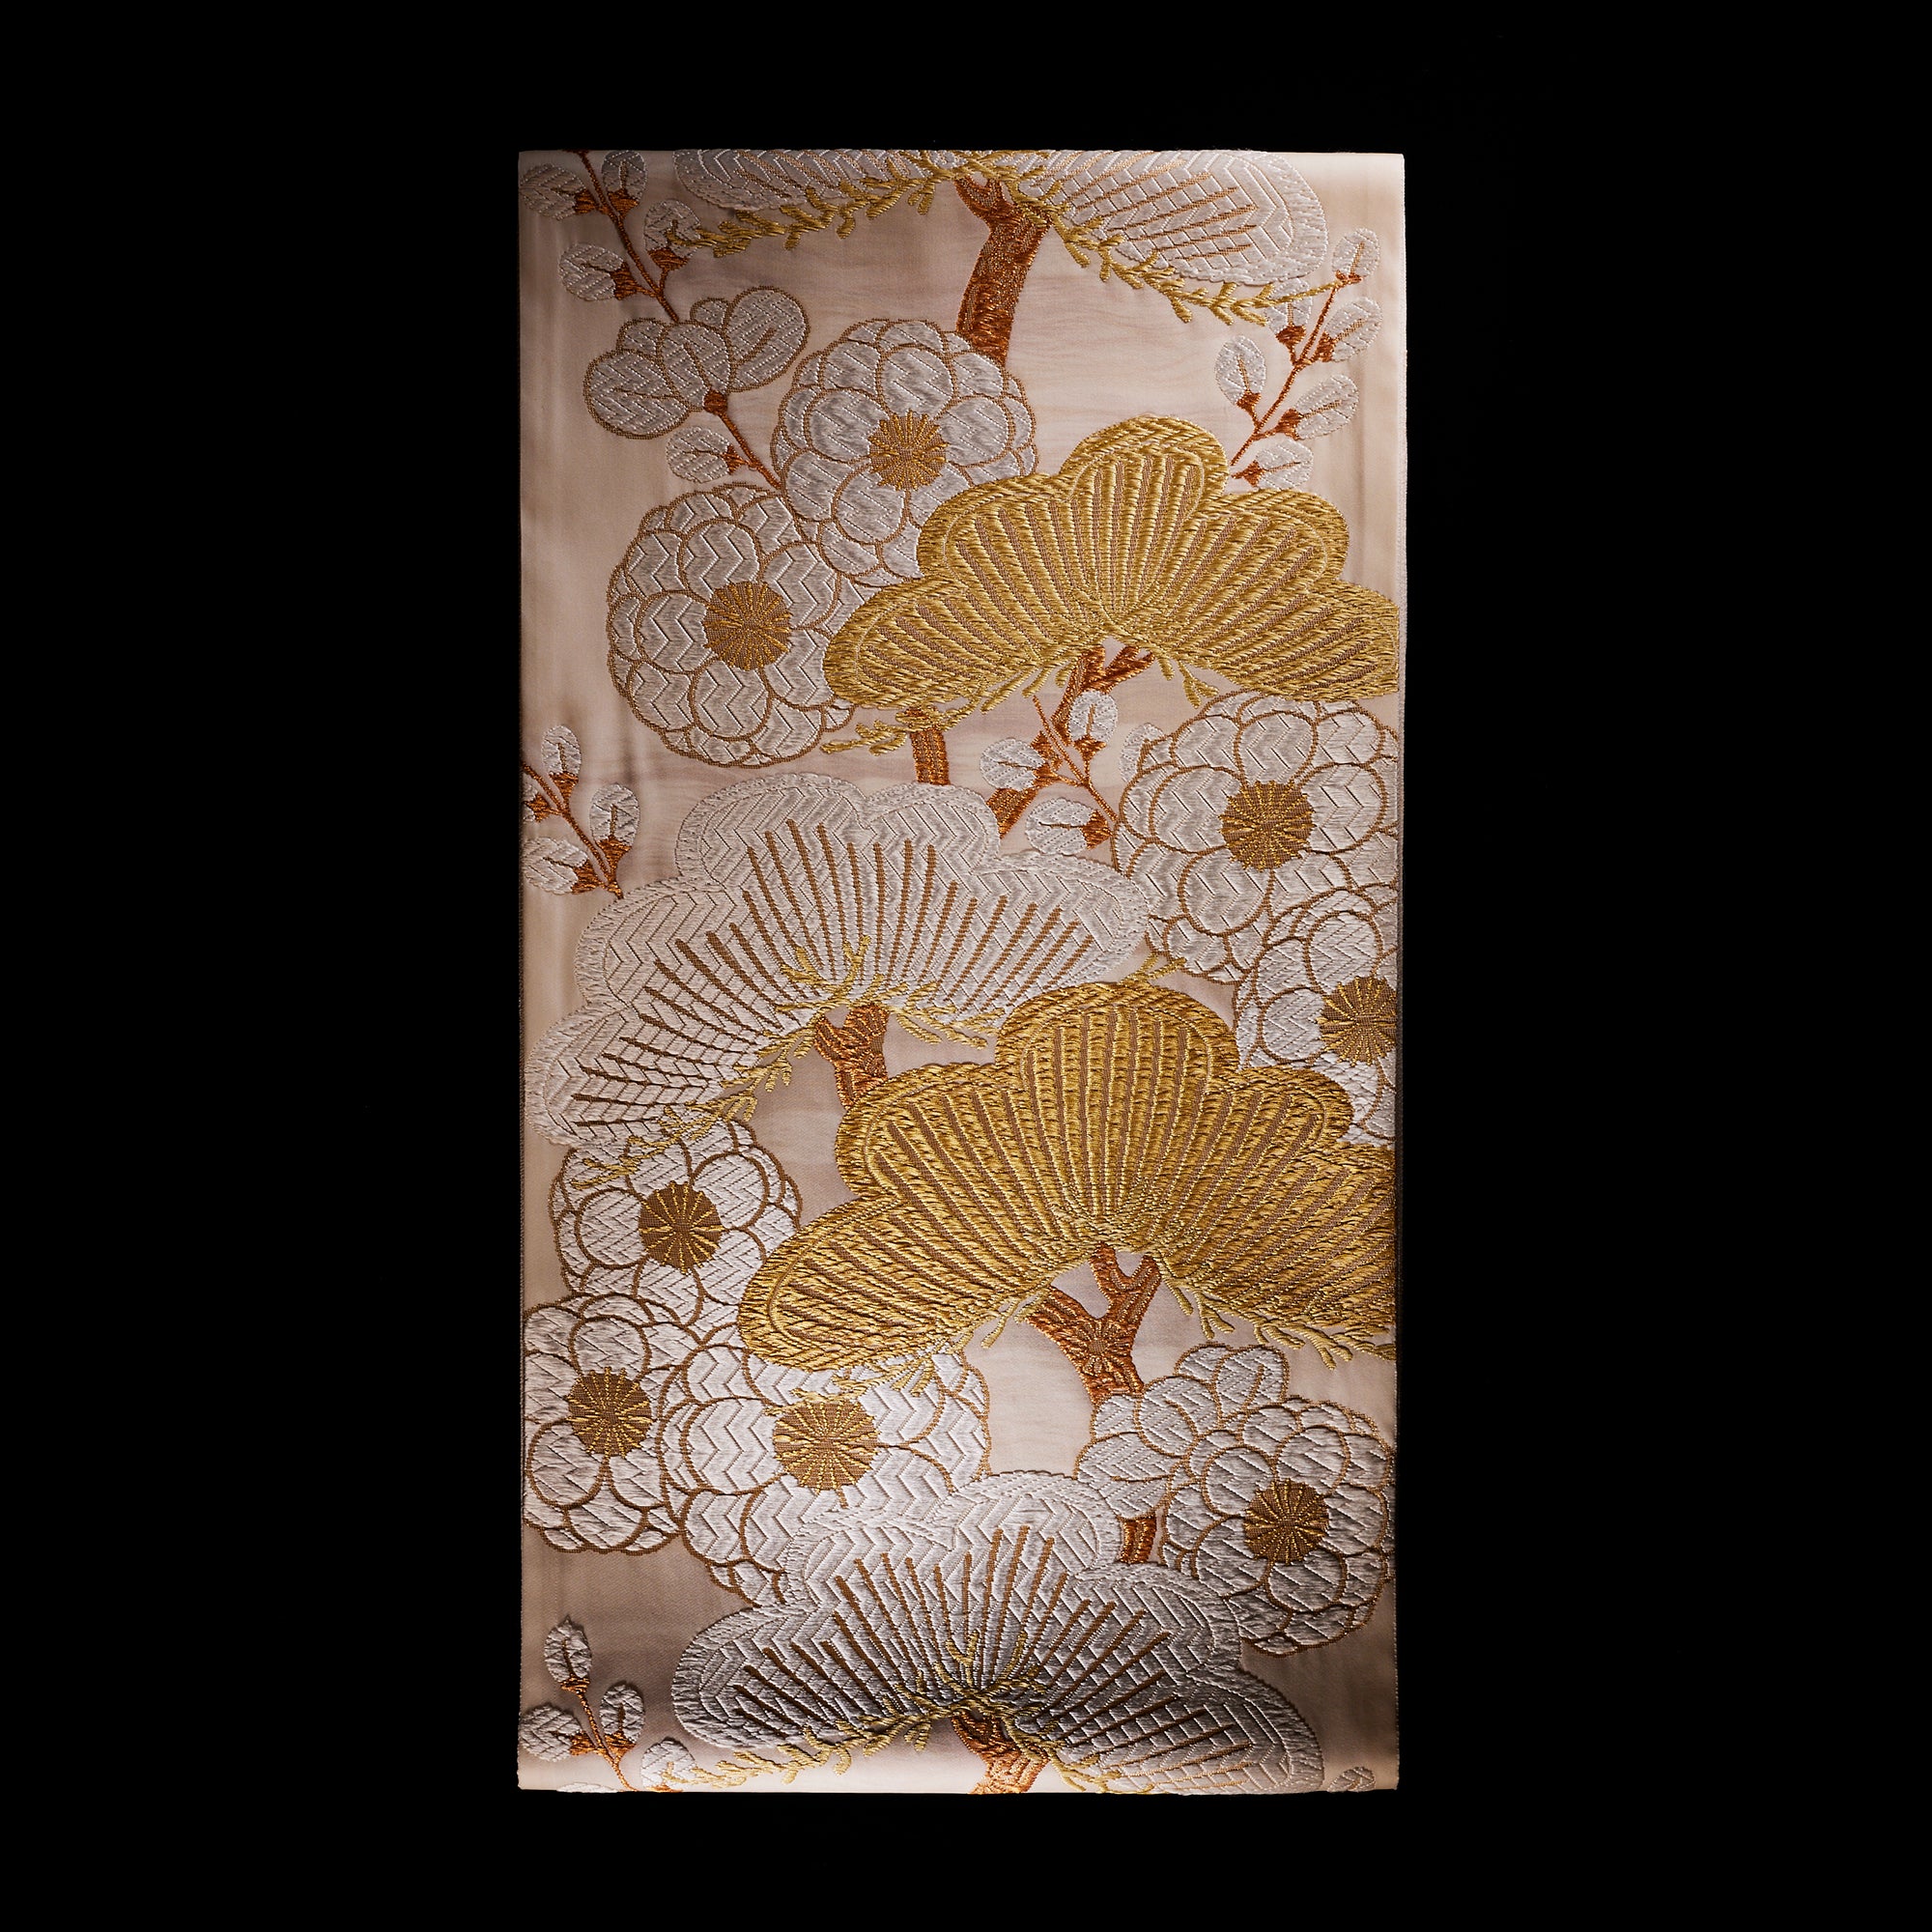 Fukuro obi Hondaya Genbei "Koishimaru Keicho Wakamatsu pattern" 